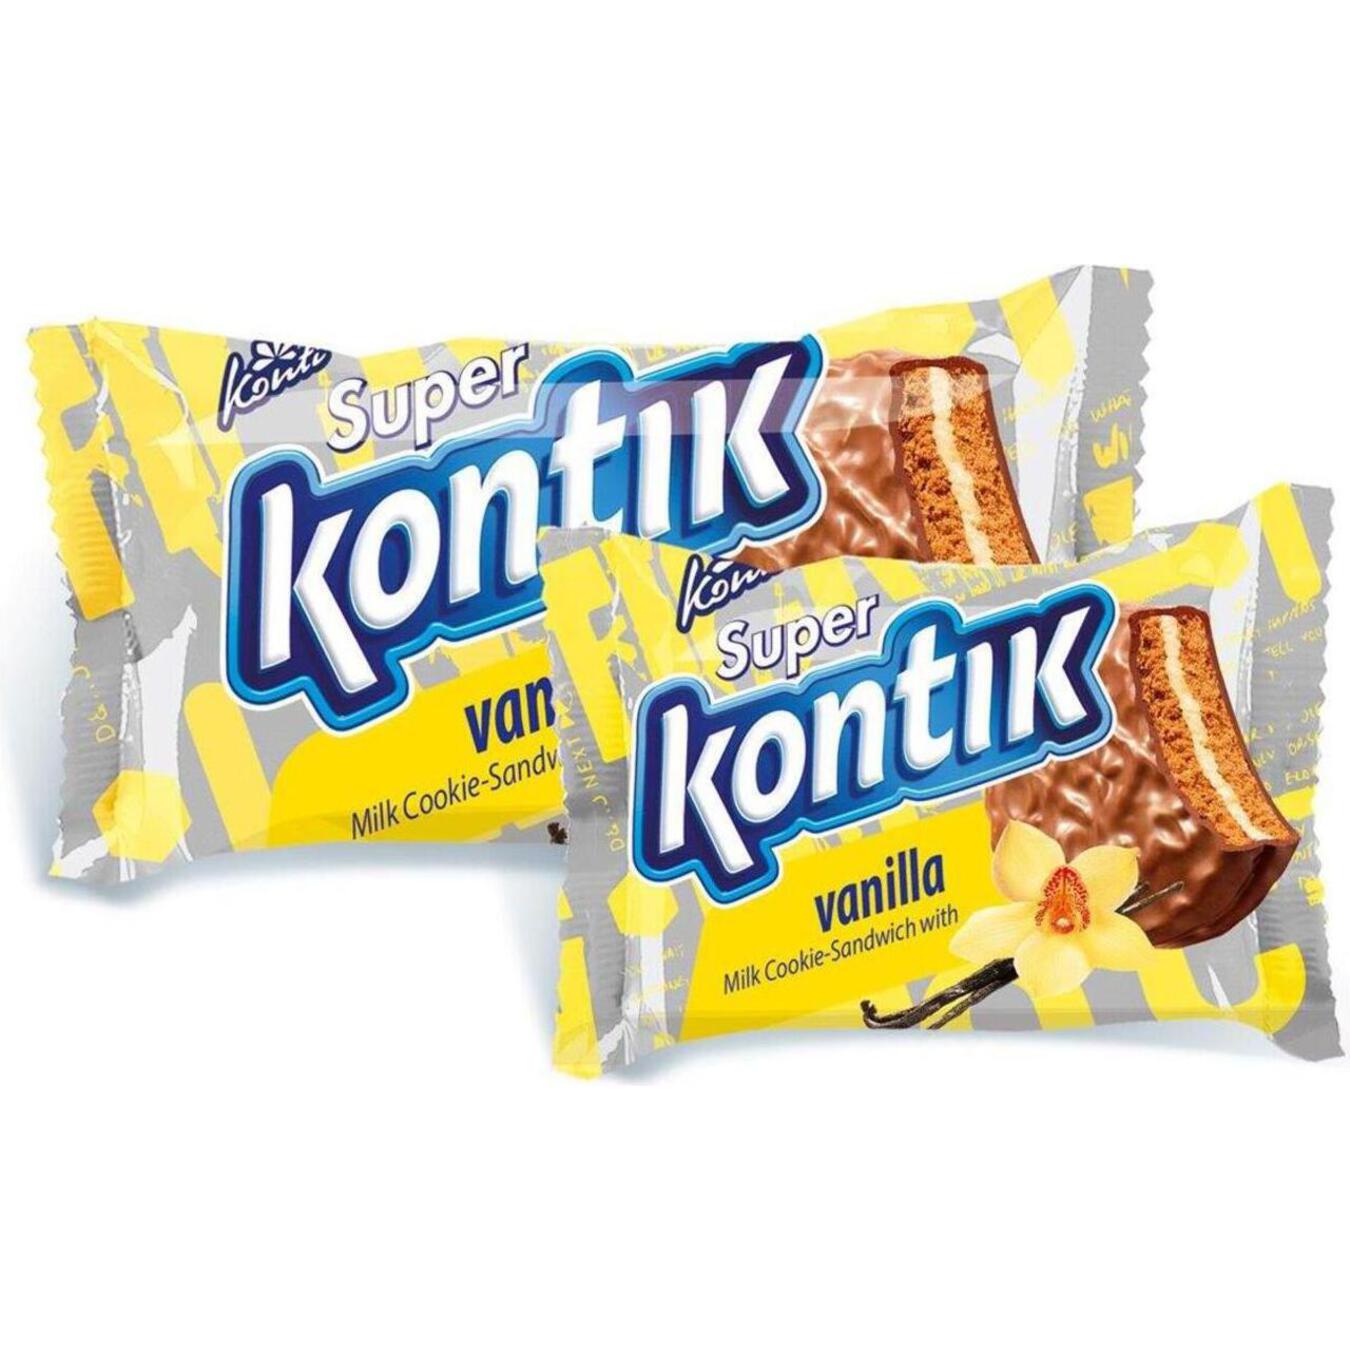 Печенье-сэндвич Konti Super Kontik с ванилью 100г